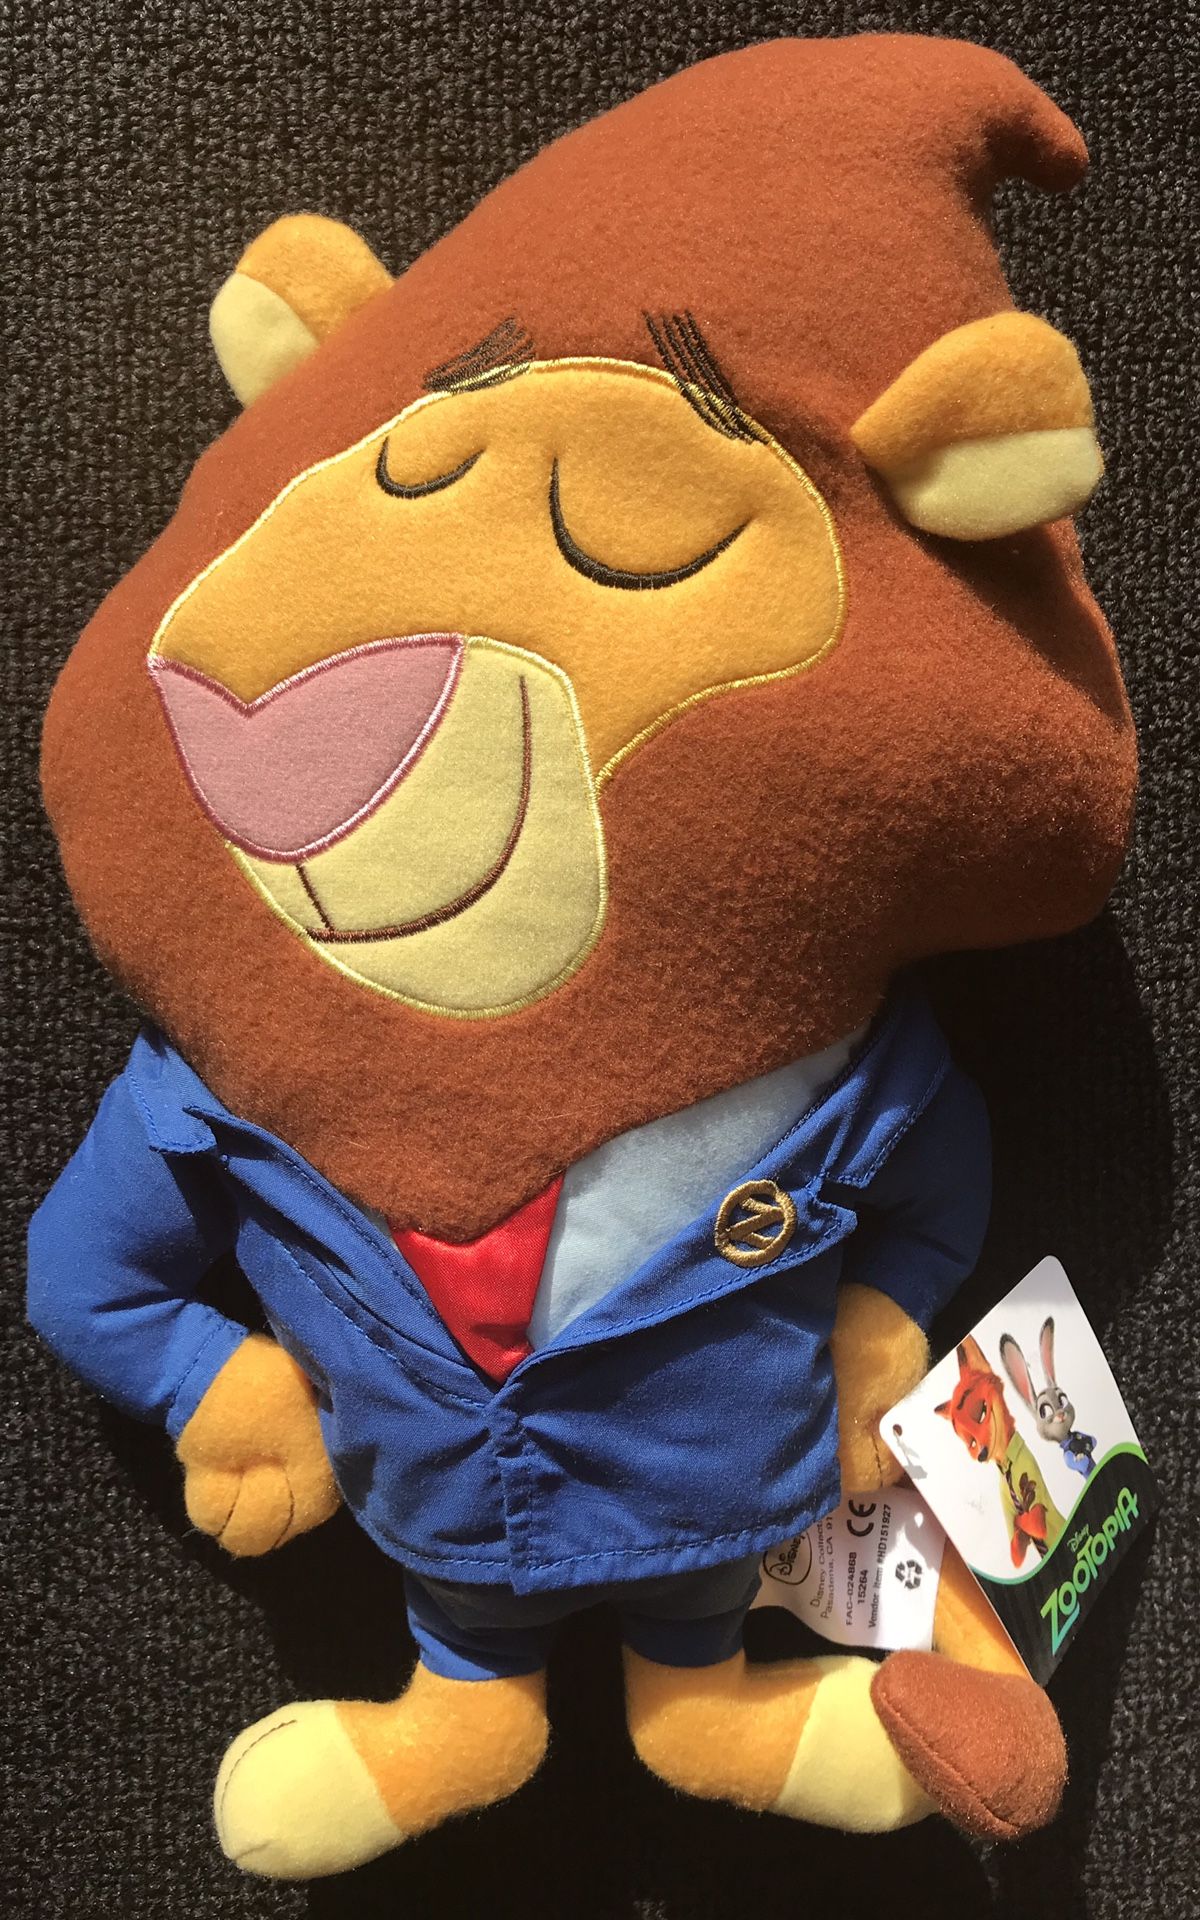 New Zootopia Mayor Lionheart stuffed animal